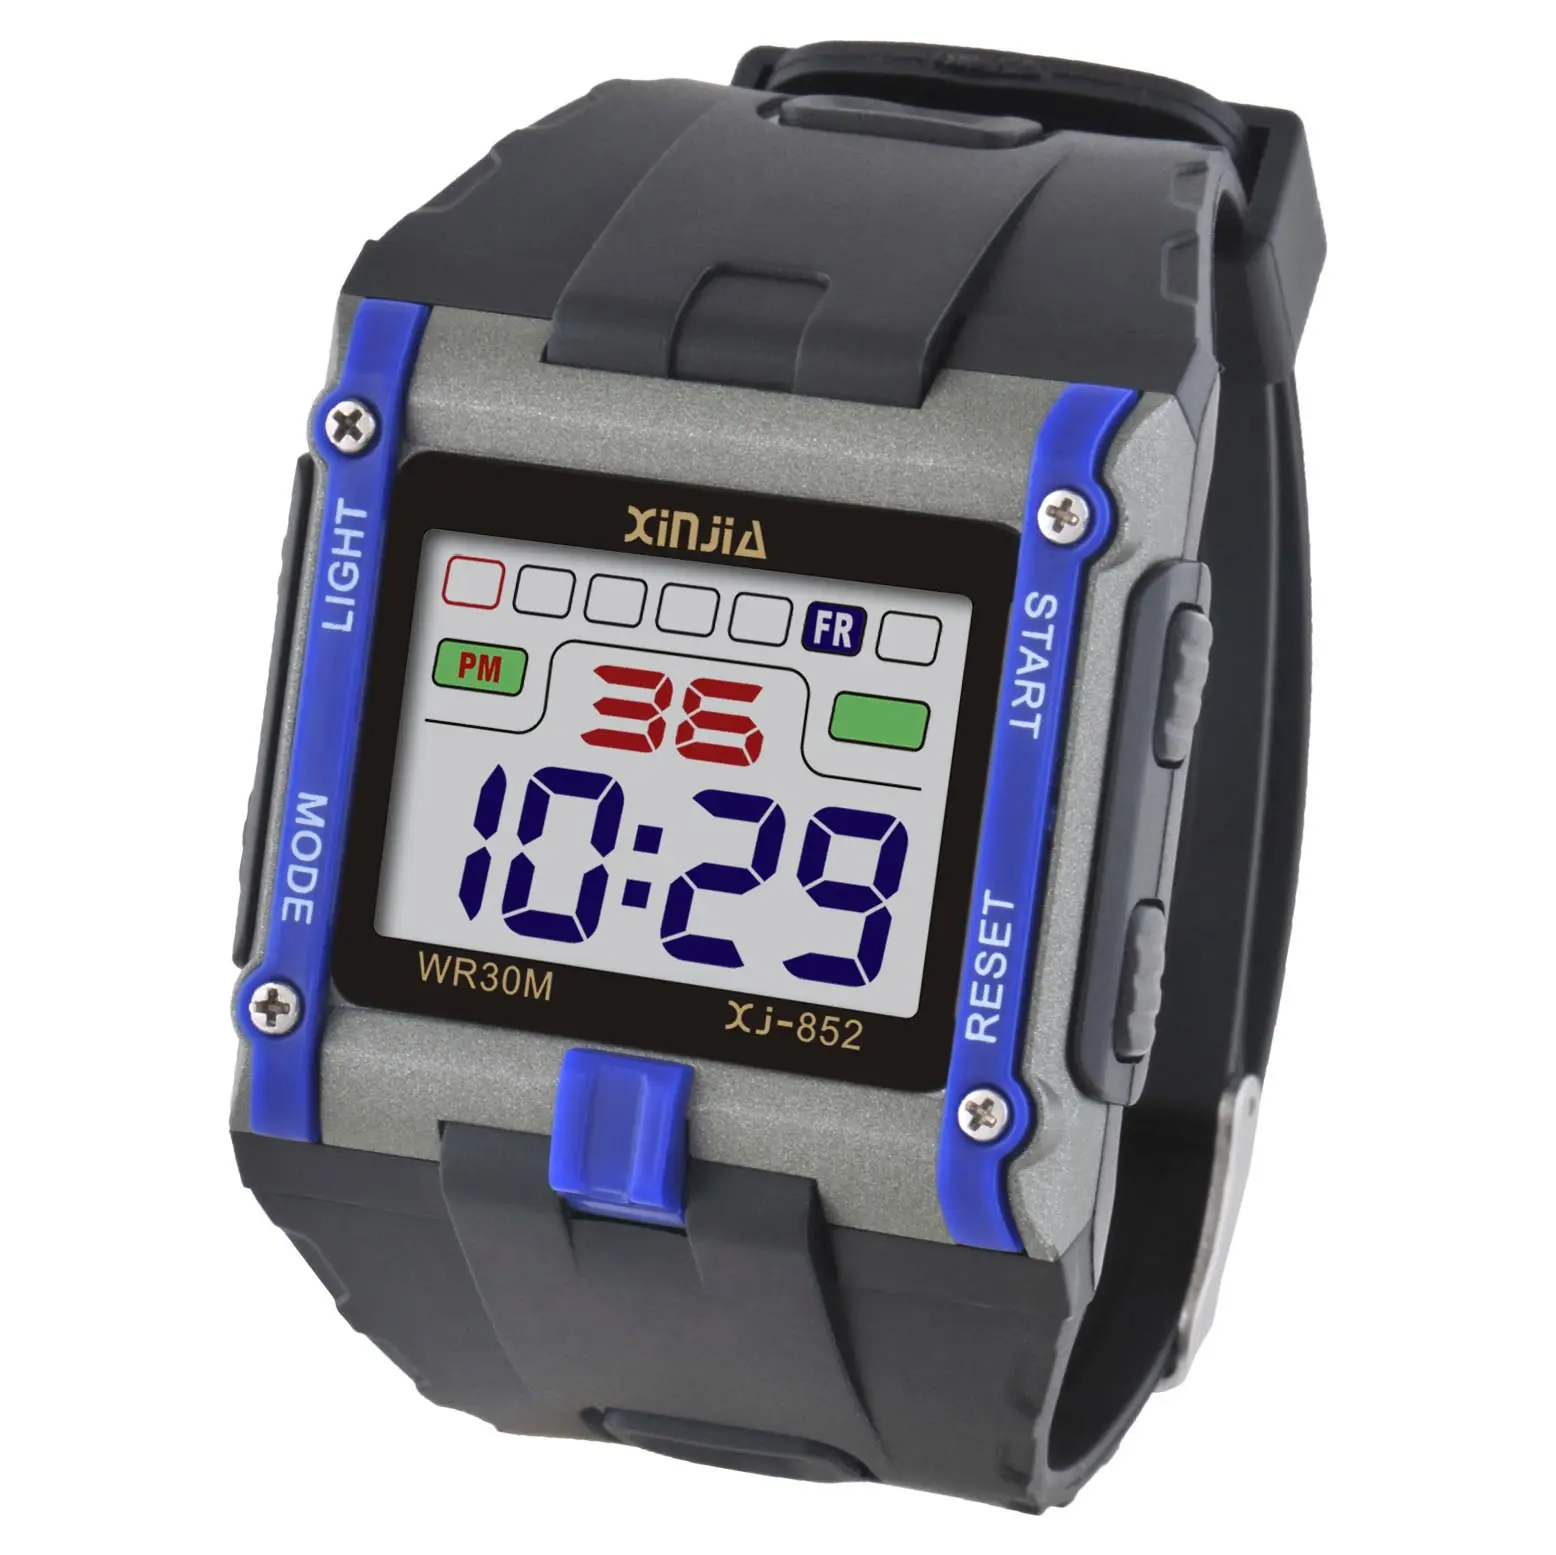 2013 XINJIA nuevo reloj Digital de los hombres del reloj del deporte rectángulo forma r 30M impermeable reloj de pulsera